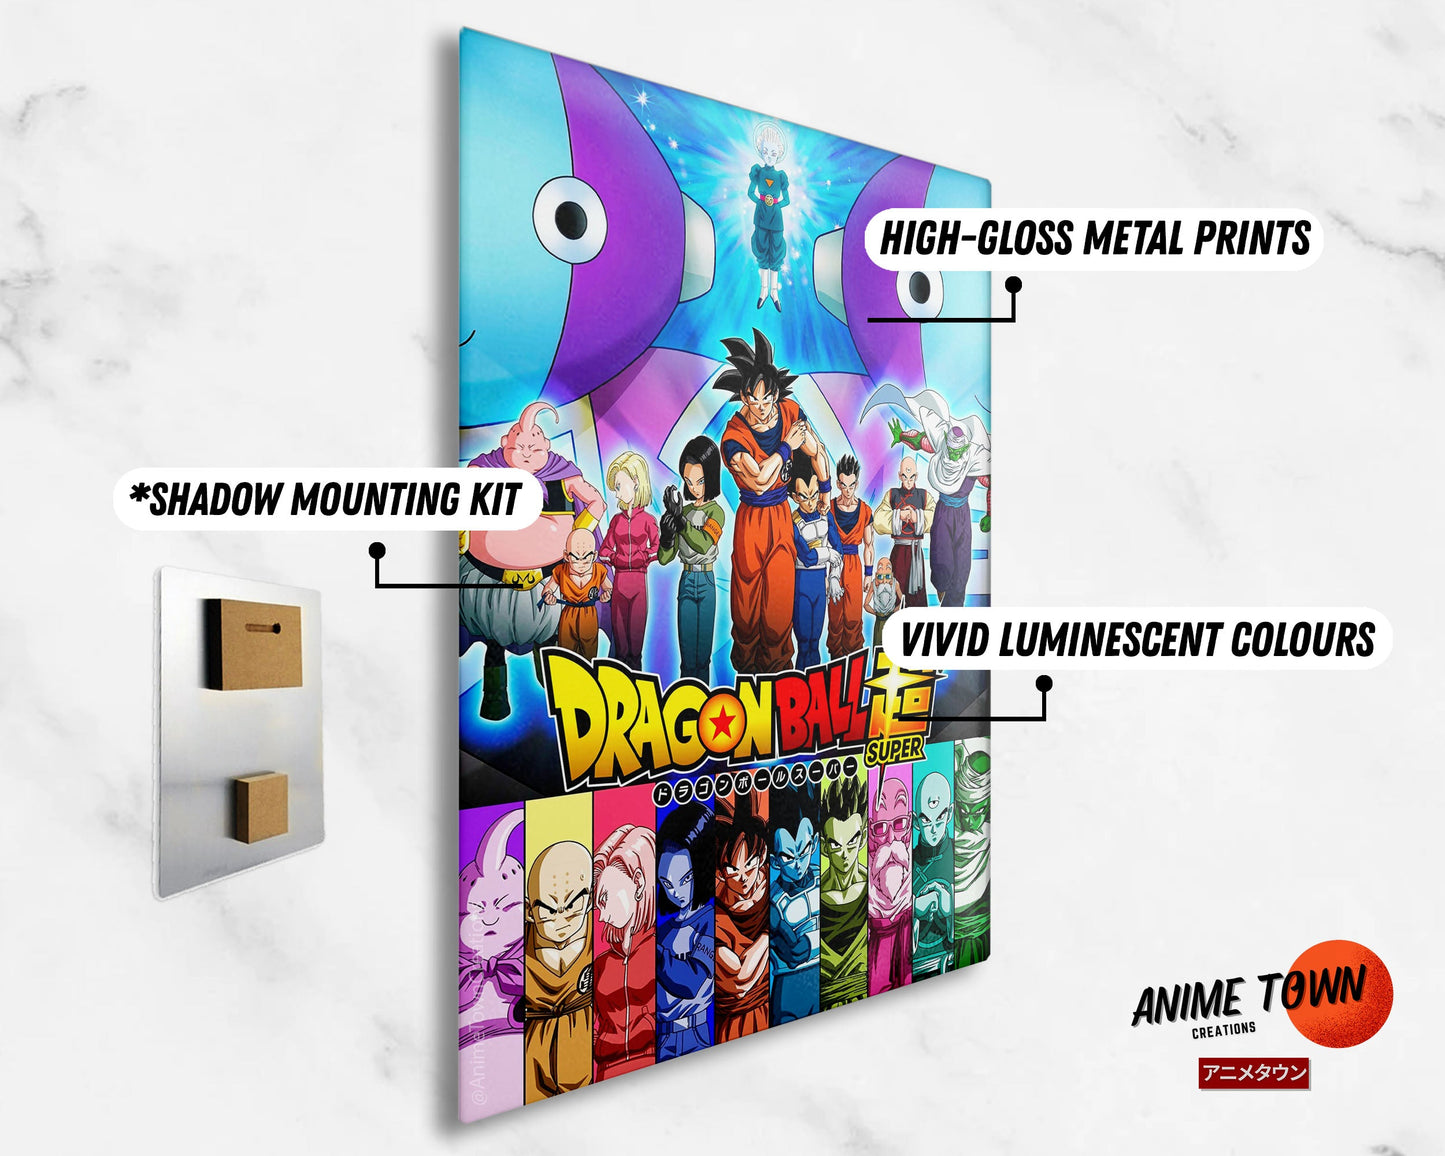 Anime Town Creations Metal Poster Dragon Ball Super (2015) 5" x 7" Home Goods - Anime Dragon Ball Metal Poster